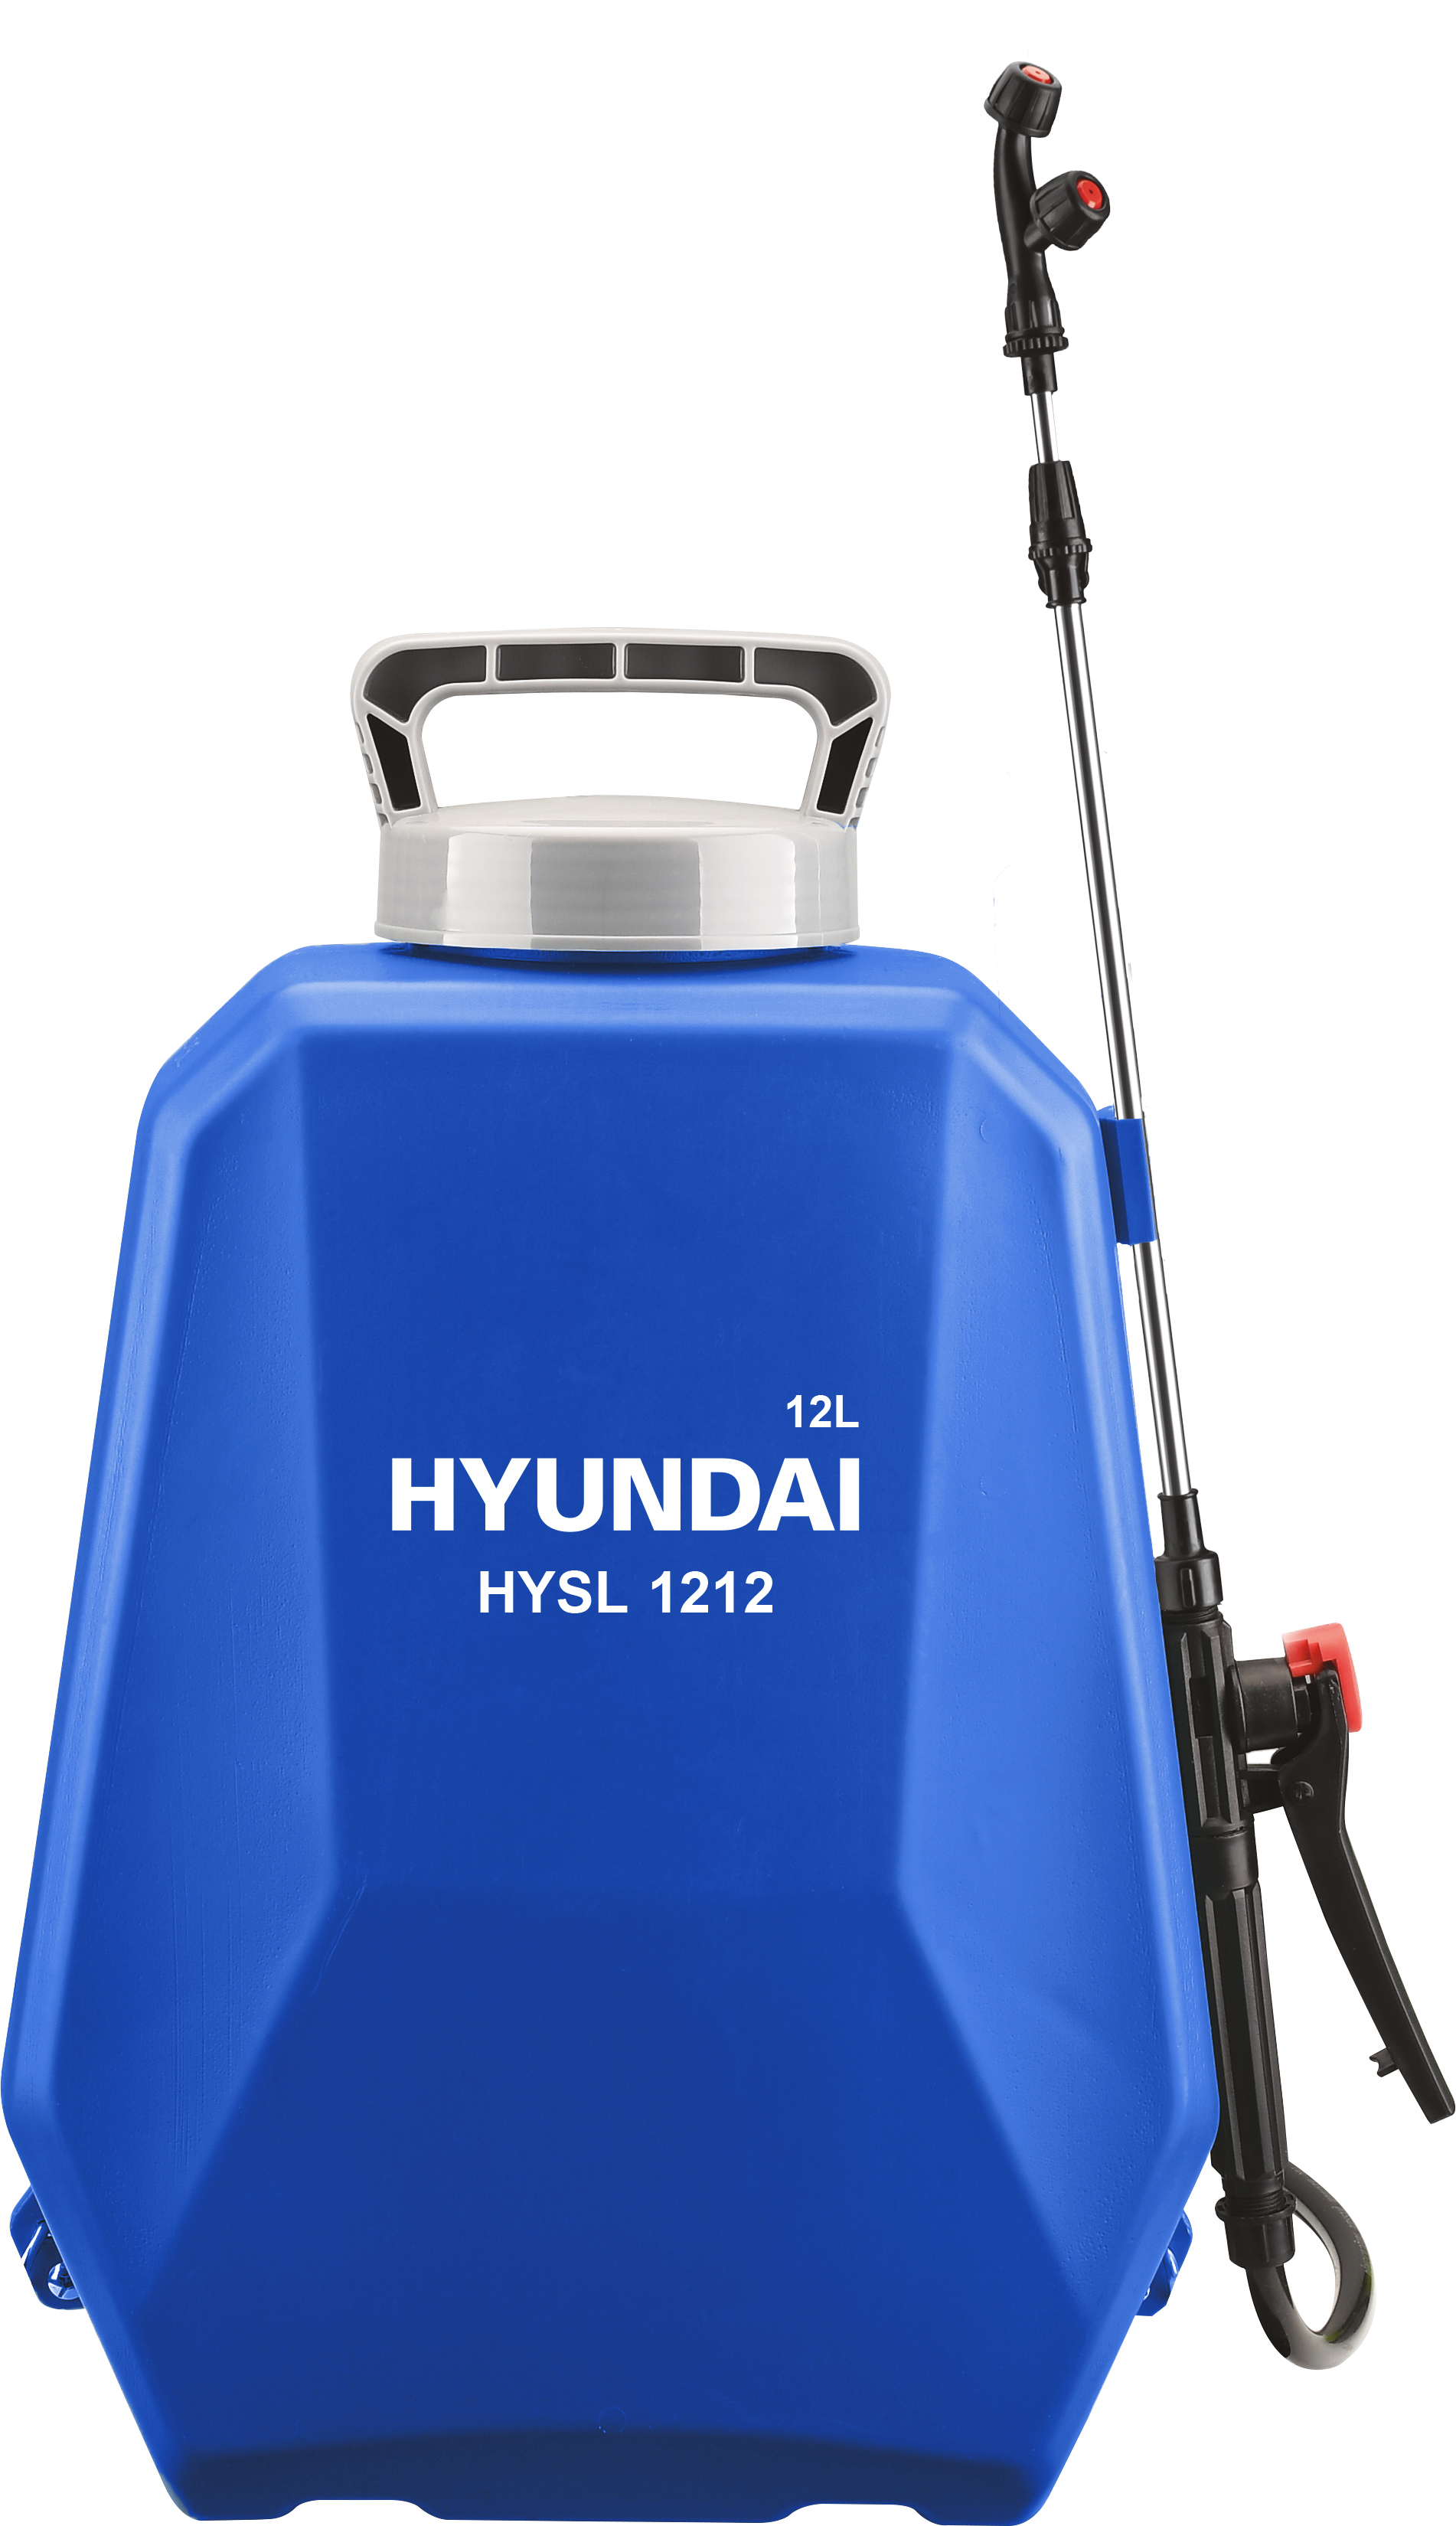 Аккумуляторный опрыскиватель Hyundai HYSL 1212 аккумуляторный опрыскиватель hyundai hysp 1212